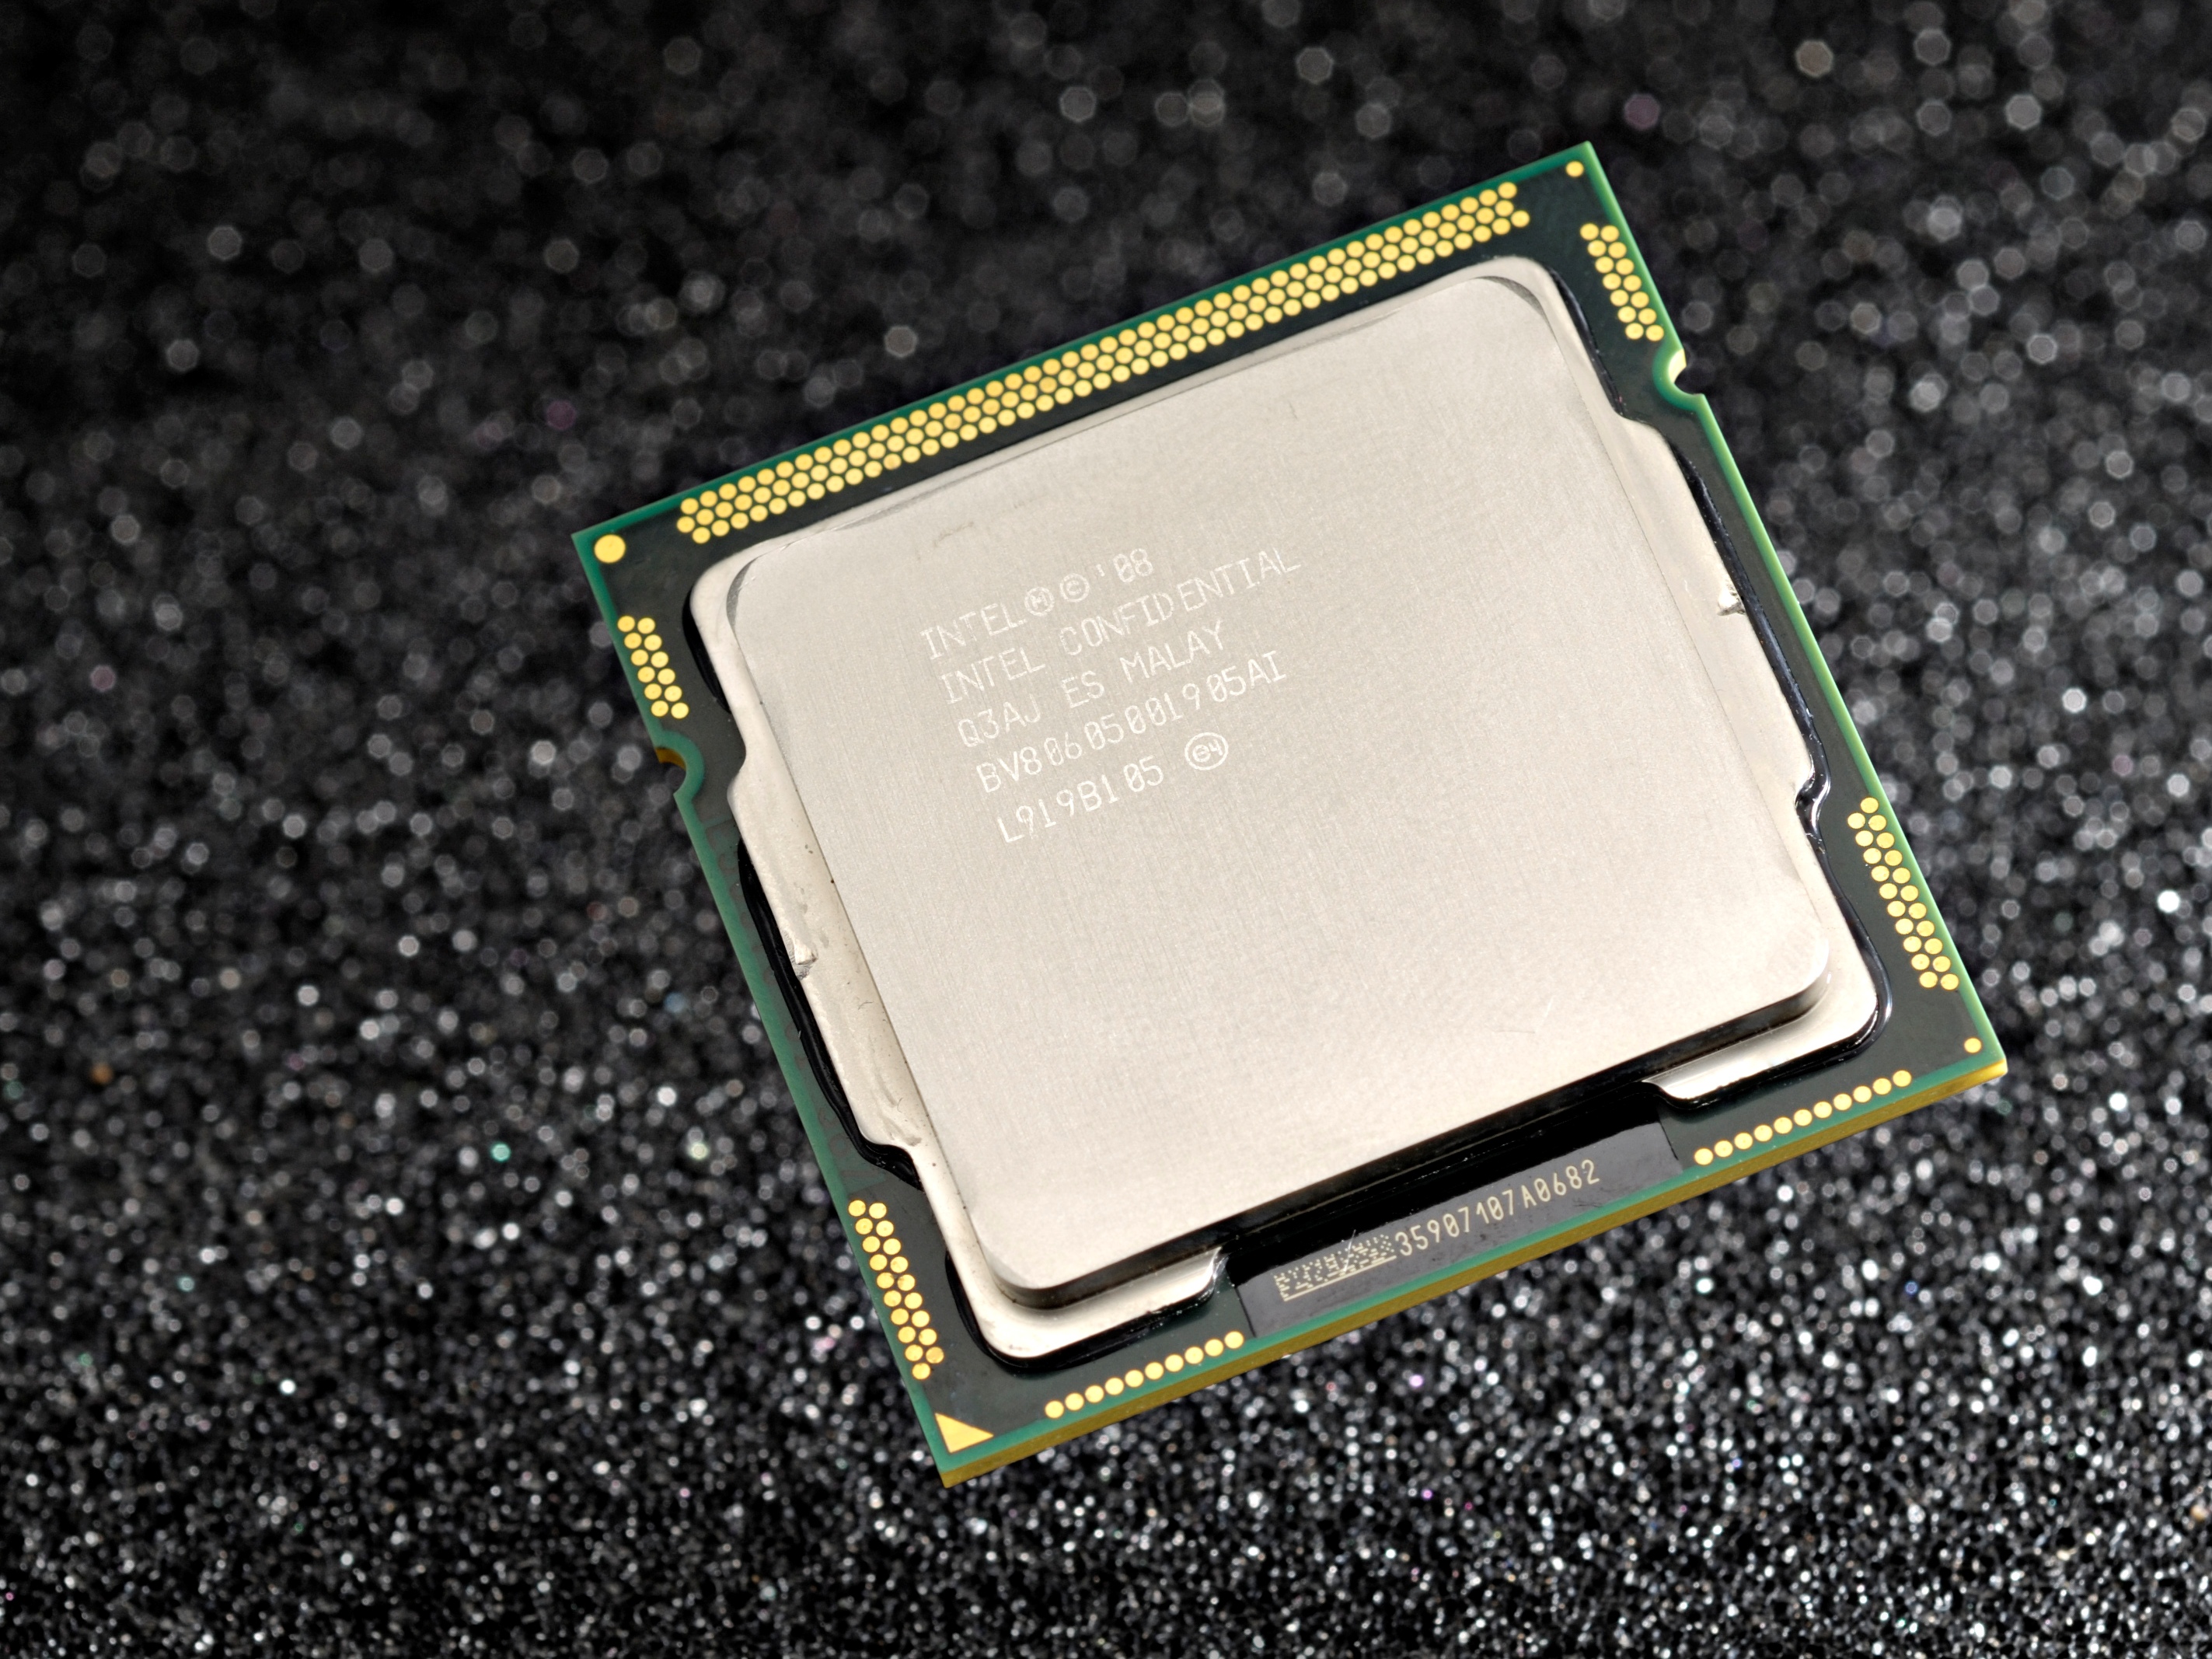 Купить процессор интел 5. Процессор Intel Core i5 750. Intel Core i5 750s. Intel Core i5-750 (2,6 ГГЦ). Intel Core 5.